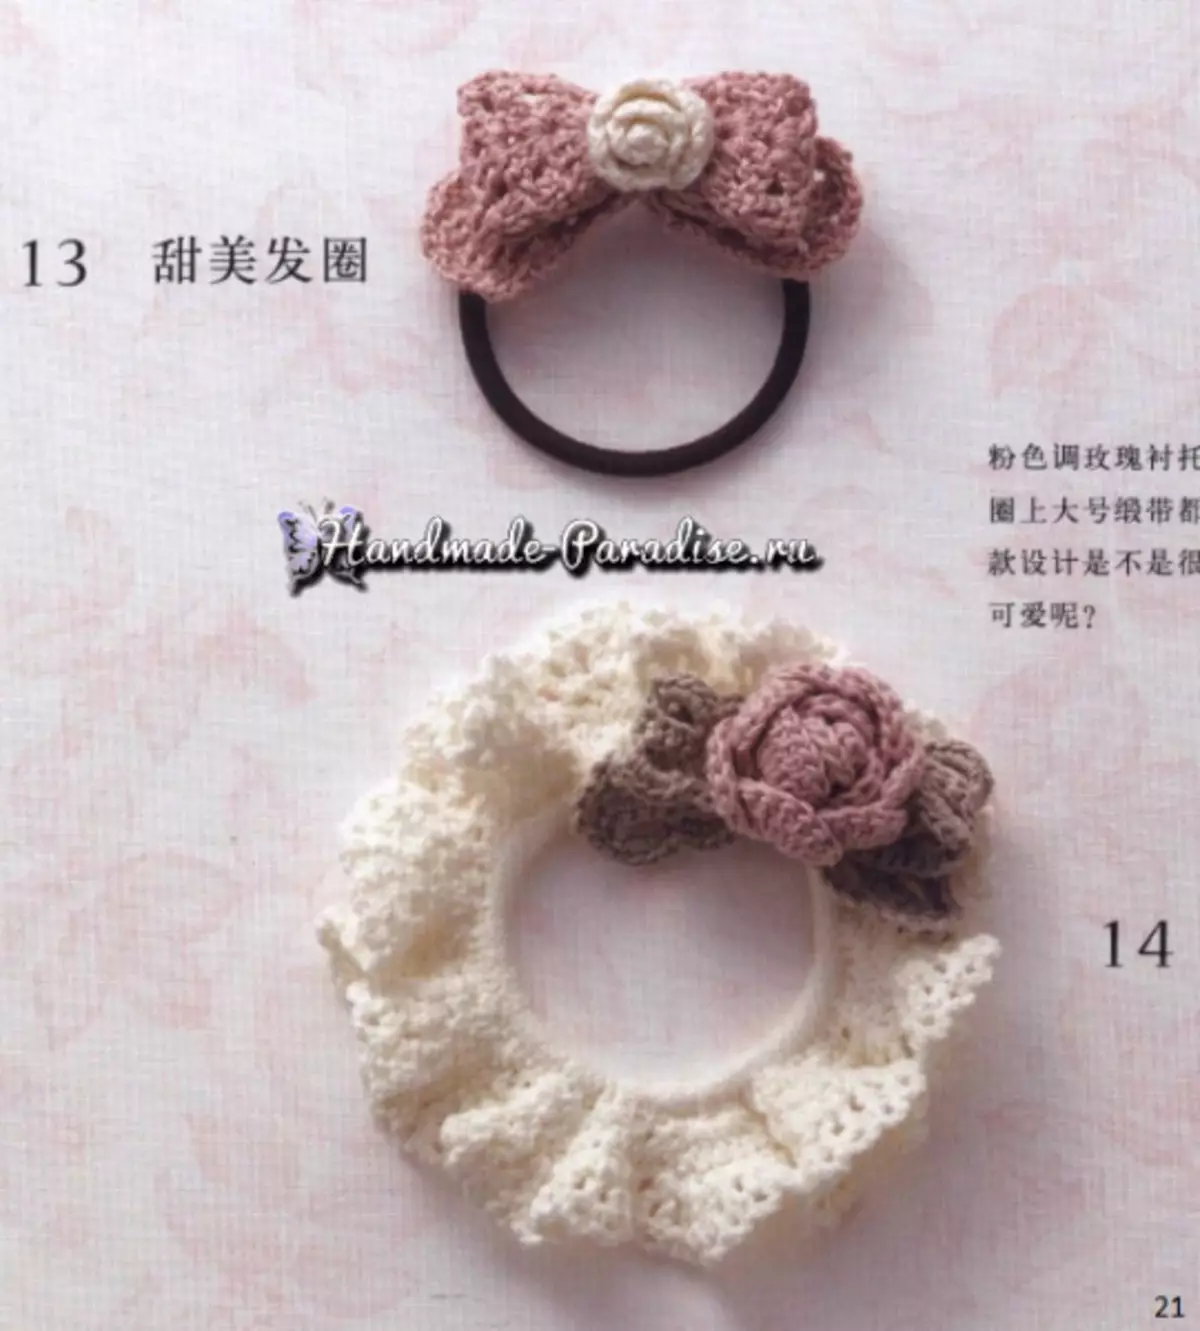 Roses Crochet. Japansk tydskrift mei skema's